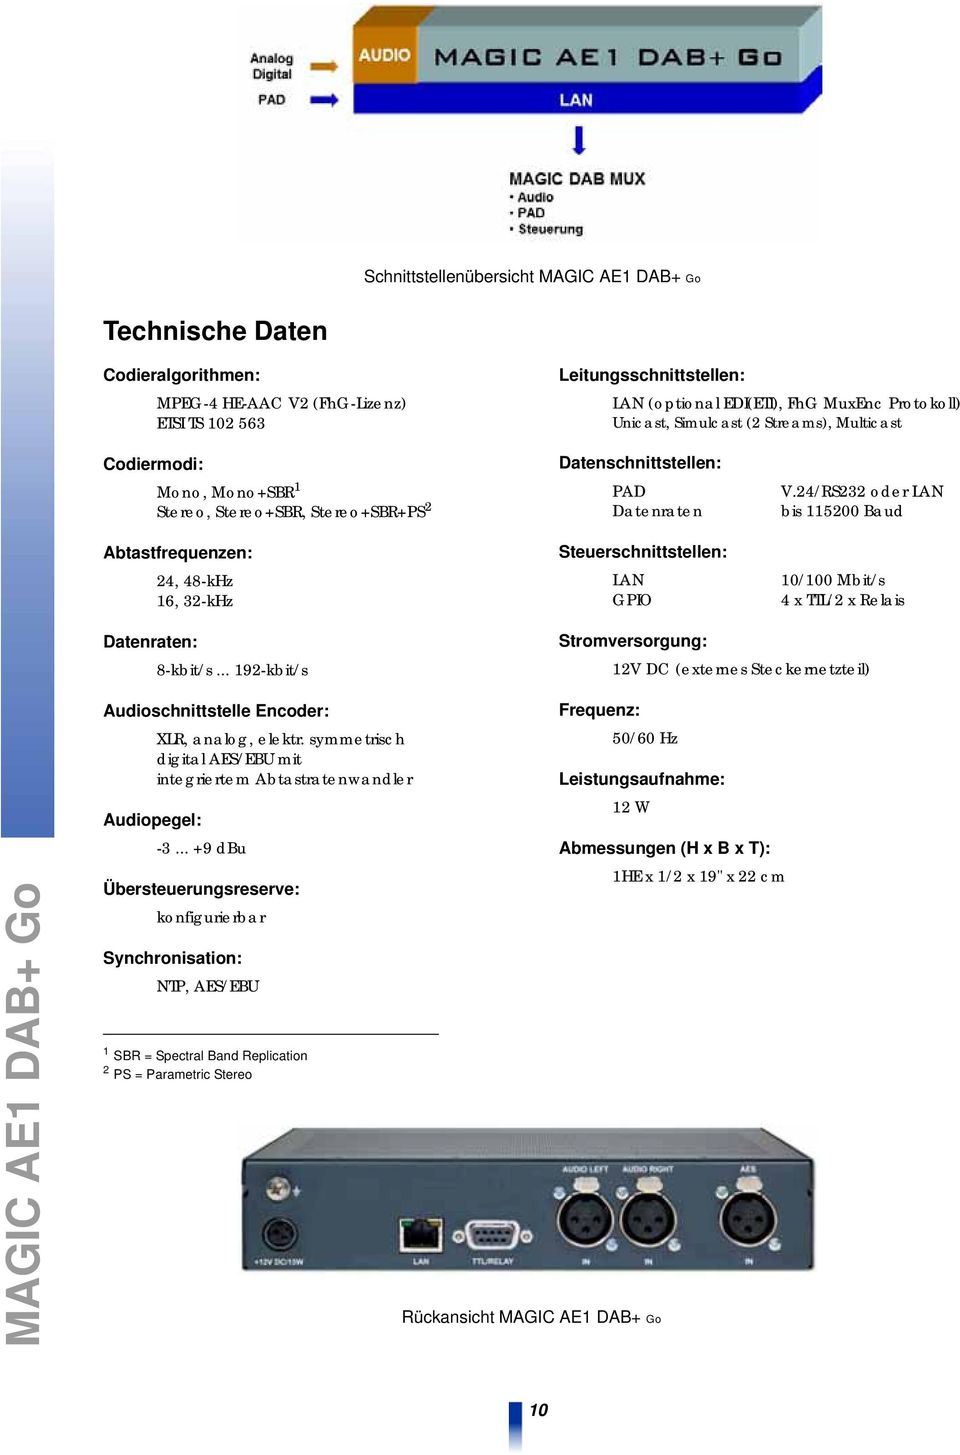 Steuerschnittstellen: LAN GPIO V.24/RS232 oder LAN bis 115200 Baud 10/100 Mbit/s 4 x TTL/2 x Relais Datenraten: 8-kbit/s.